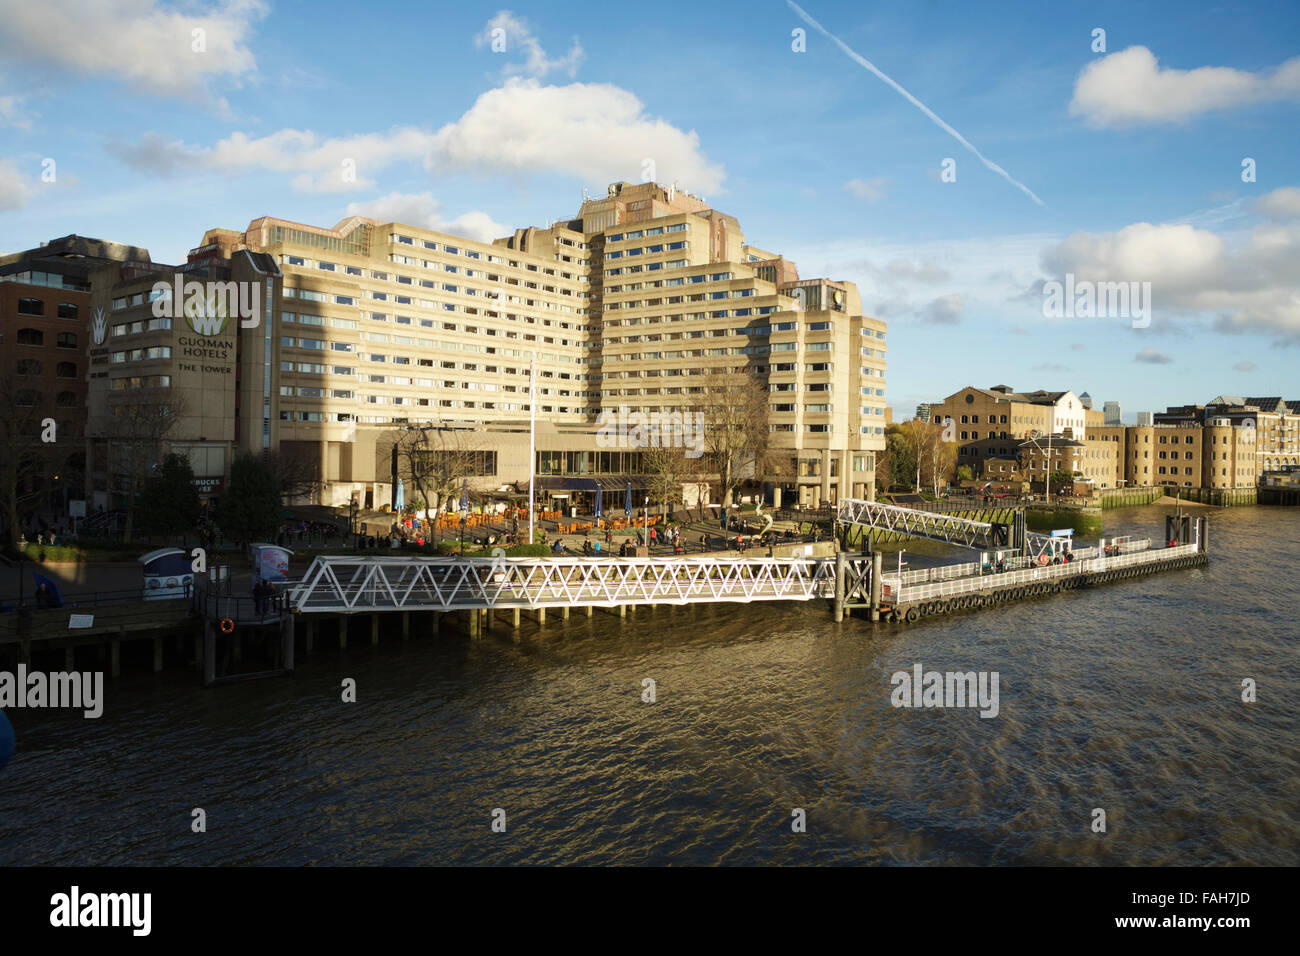 Das Tower Hotel, mit Blick auf die Themse und St Katherines Pier, London, England, UK. Stockfoto